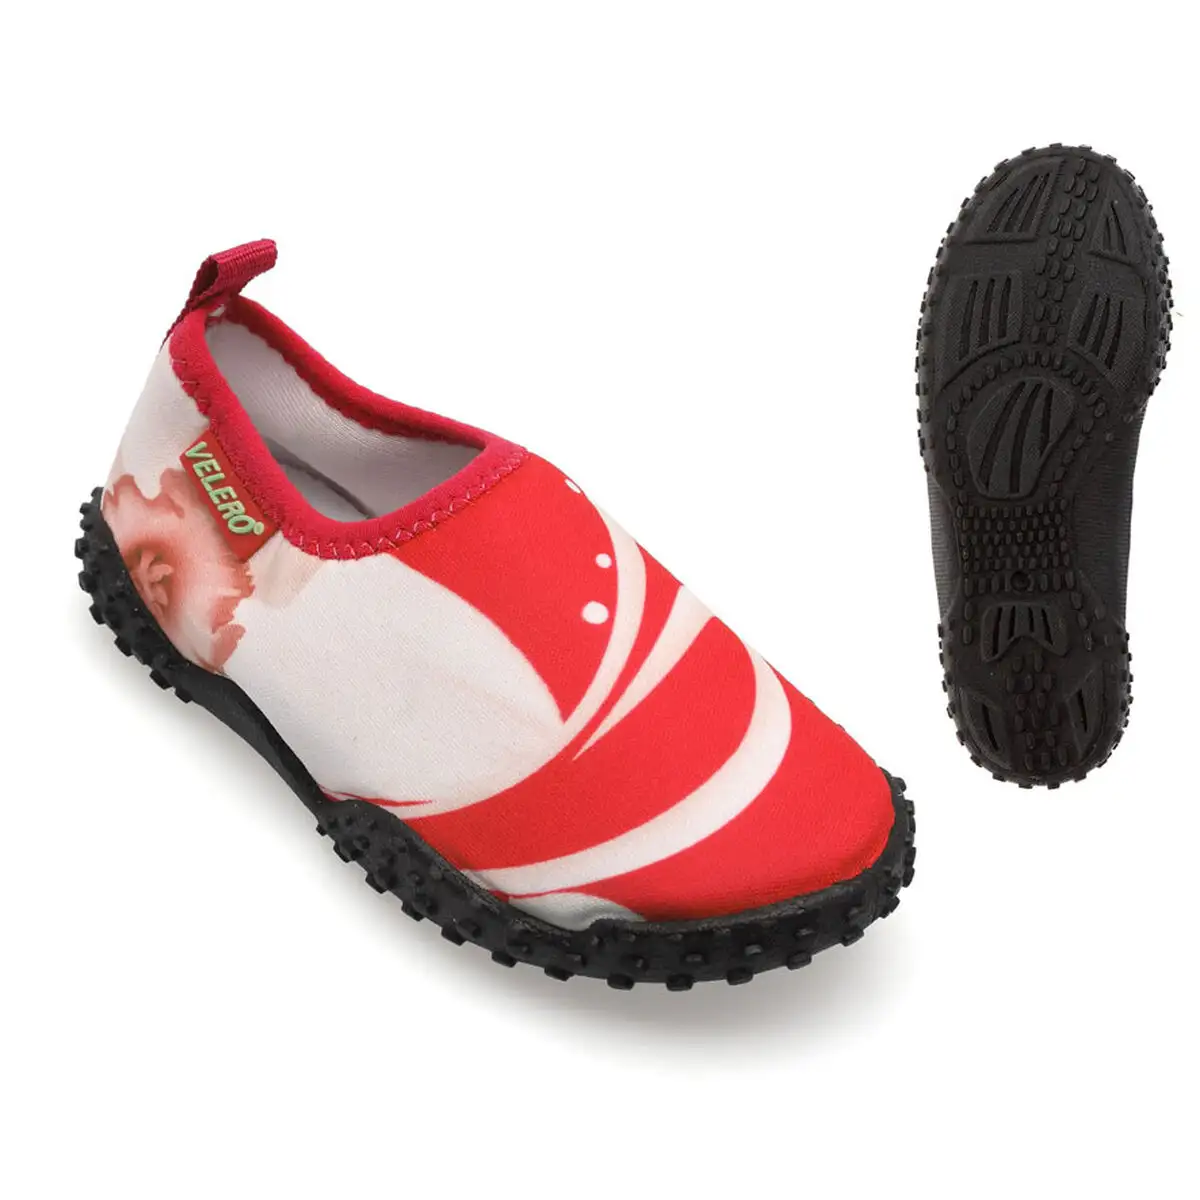 Chaussures aquatiques pour enfants aquasocker rojo blanco 25_8240. DIAYTAR SENEGAL - L'Art du Shopping Éclairé. Naviguez à travers notre plateforme intuitive et découvrez une variété d'articles soigneusement sélectionnés pour répondre à vos besoins et à vos envies.